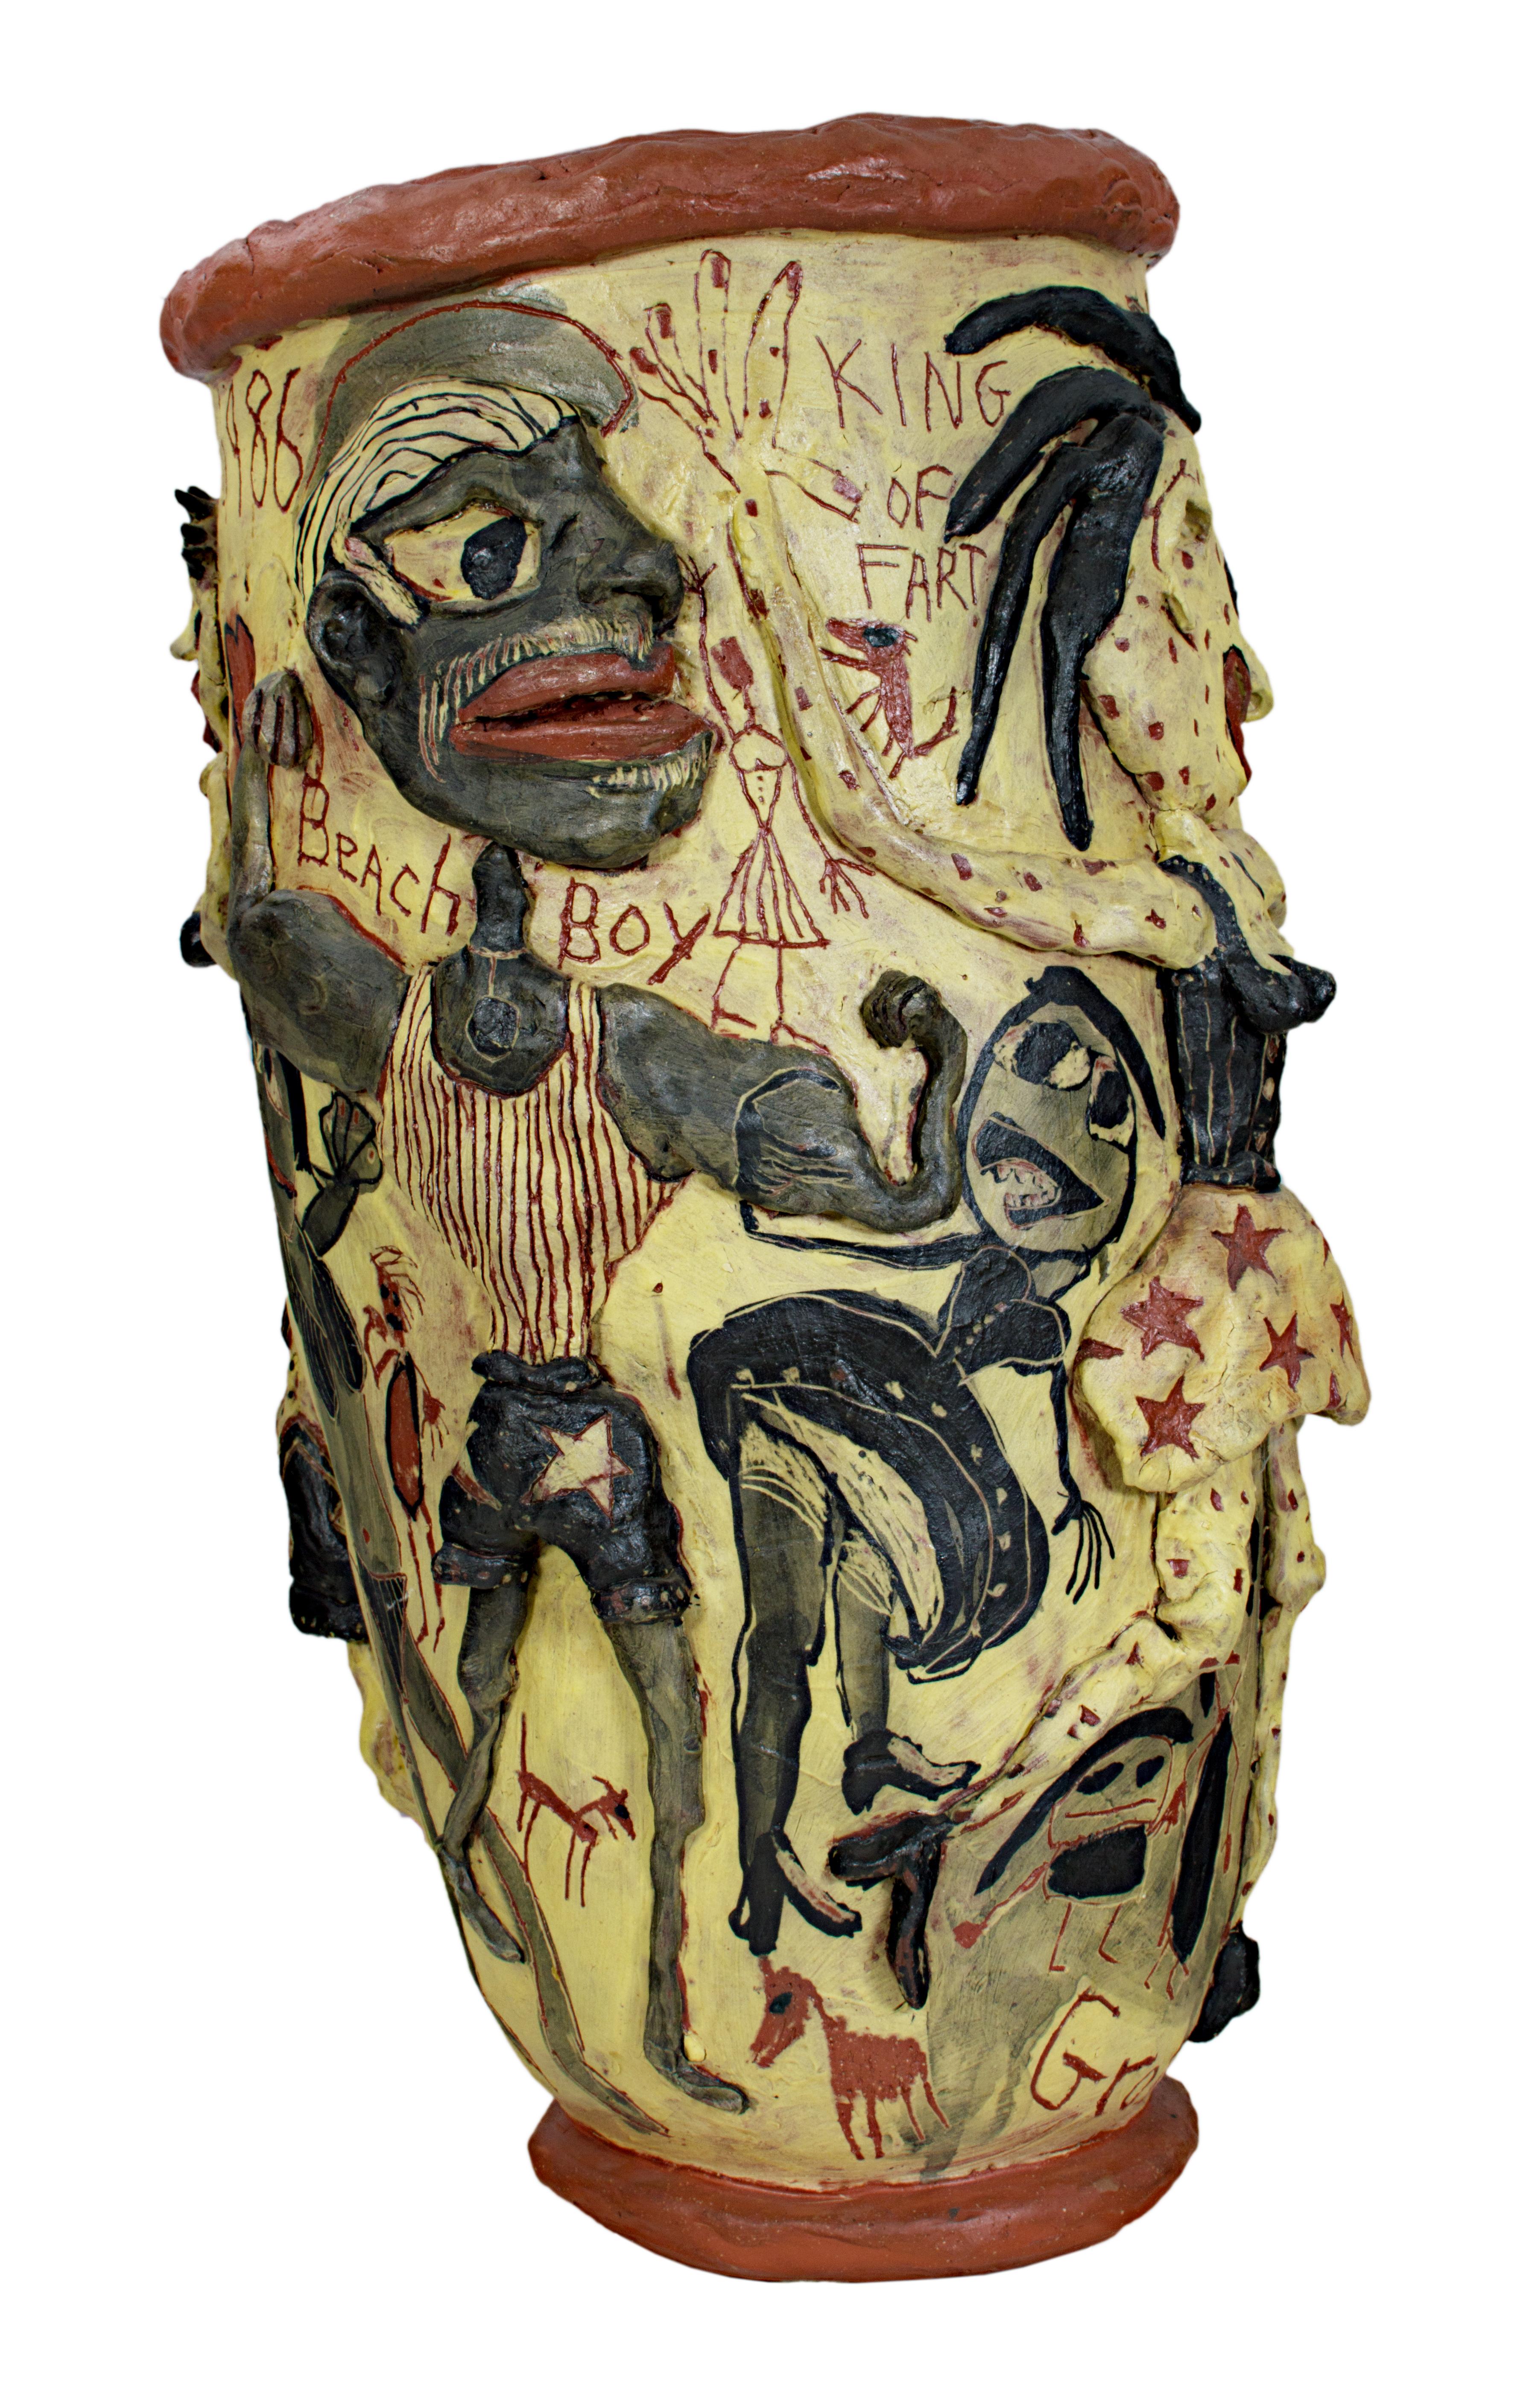 Les sculptures en céramique de l'artiste du Wisconsin Michael Gross sont des récits personnels qui révèlent un mélange inhabituel de magie terrestre et de vitalité primitive. L'artiste travaille sous diverses formes, notamment des figurines, de